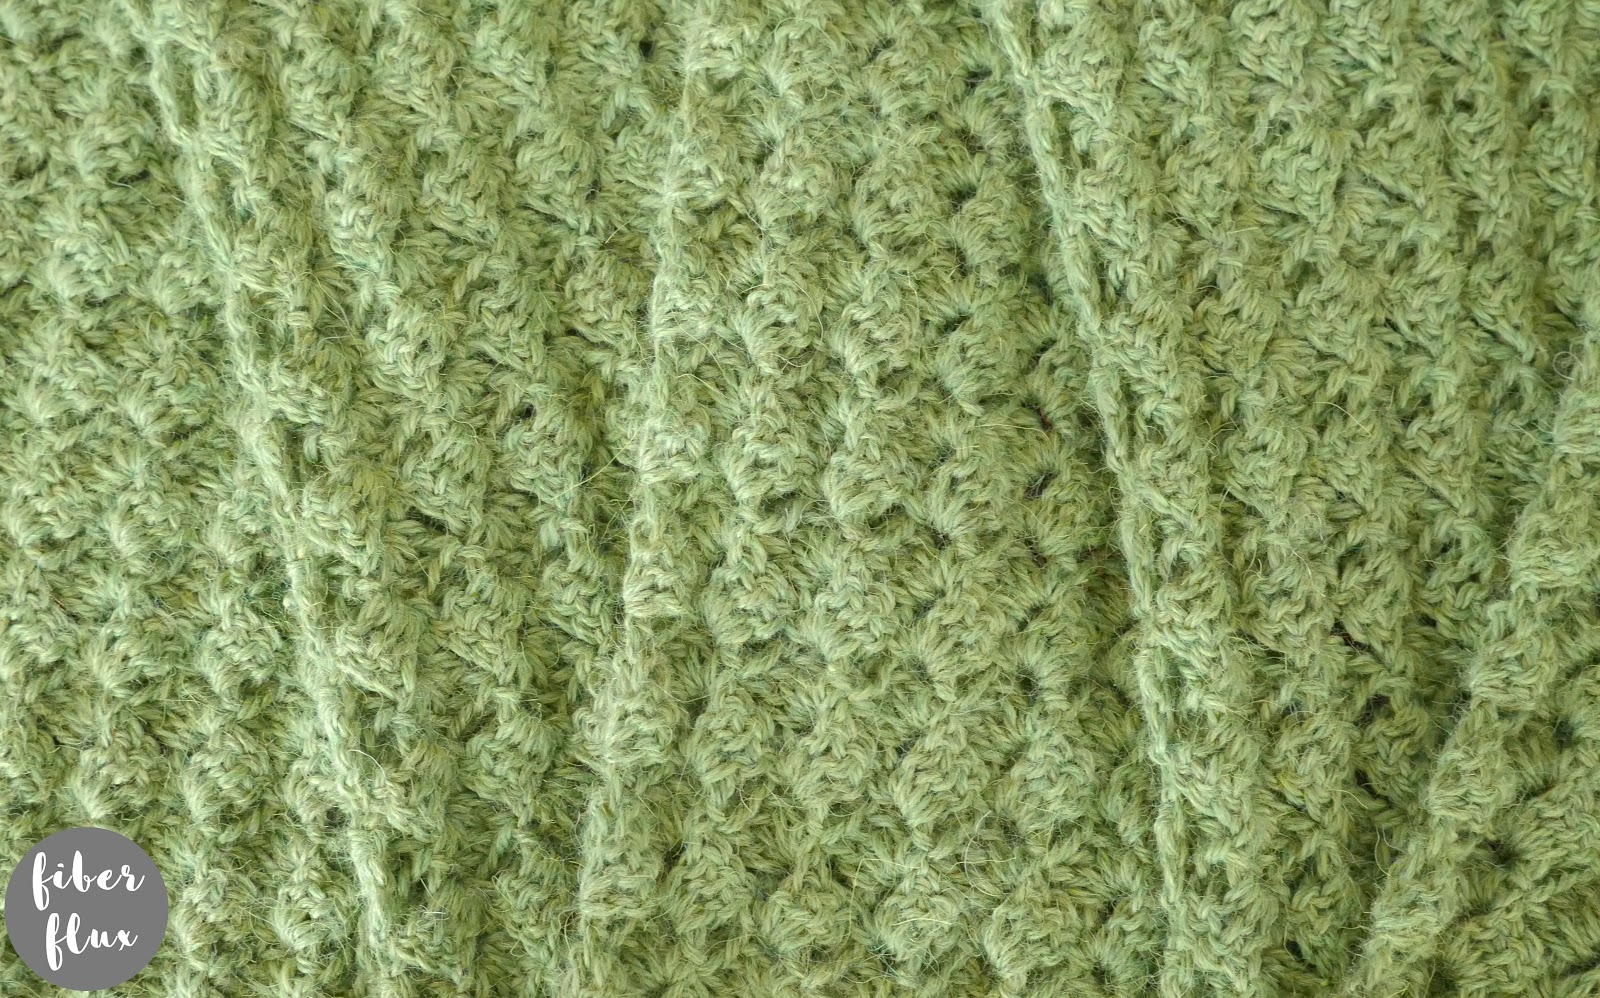 Celtic Song Crochet Scarf